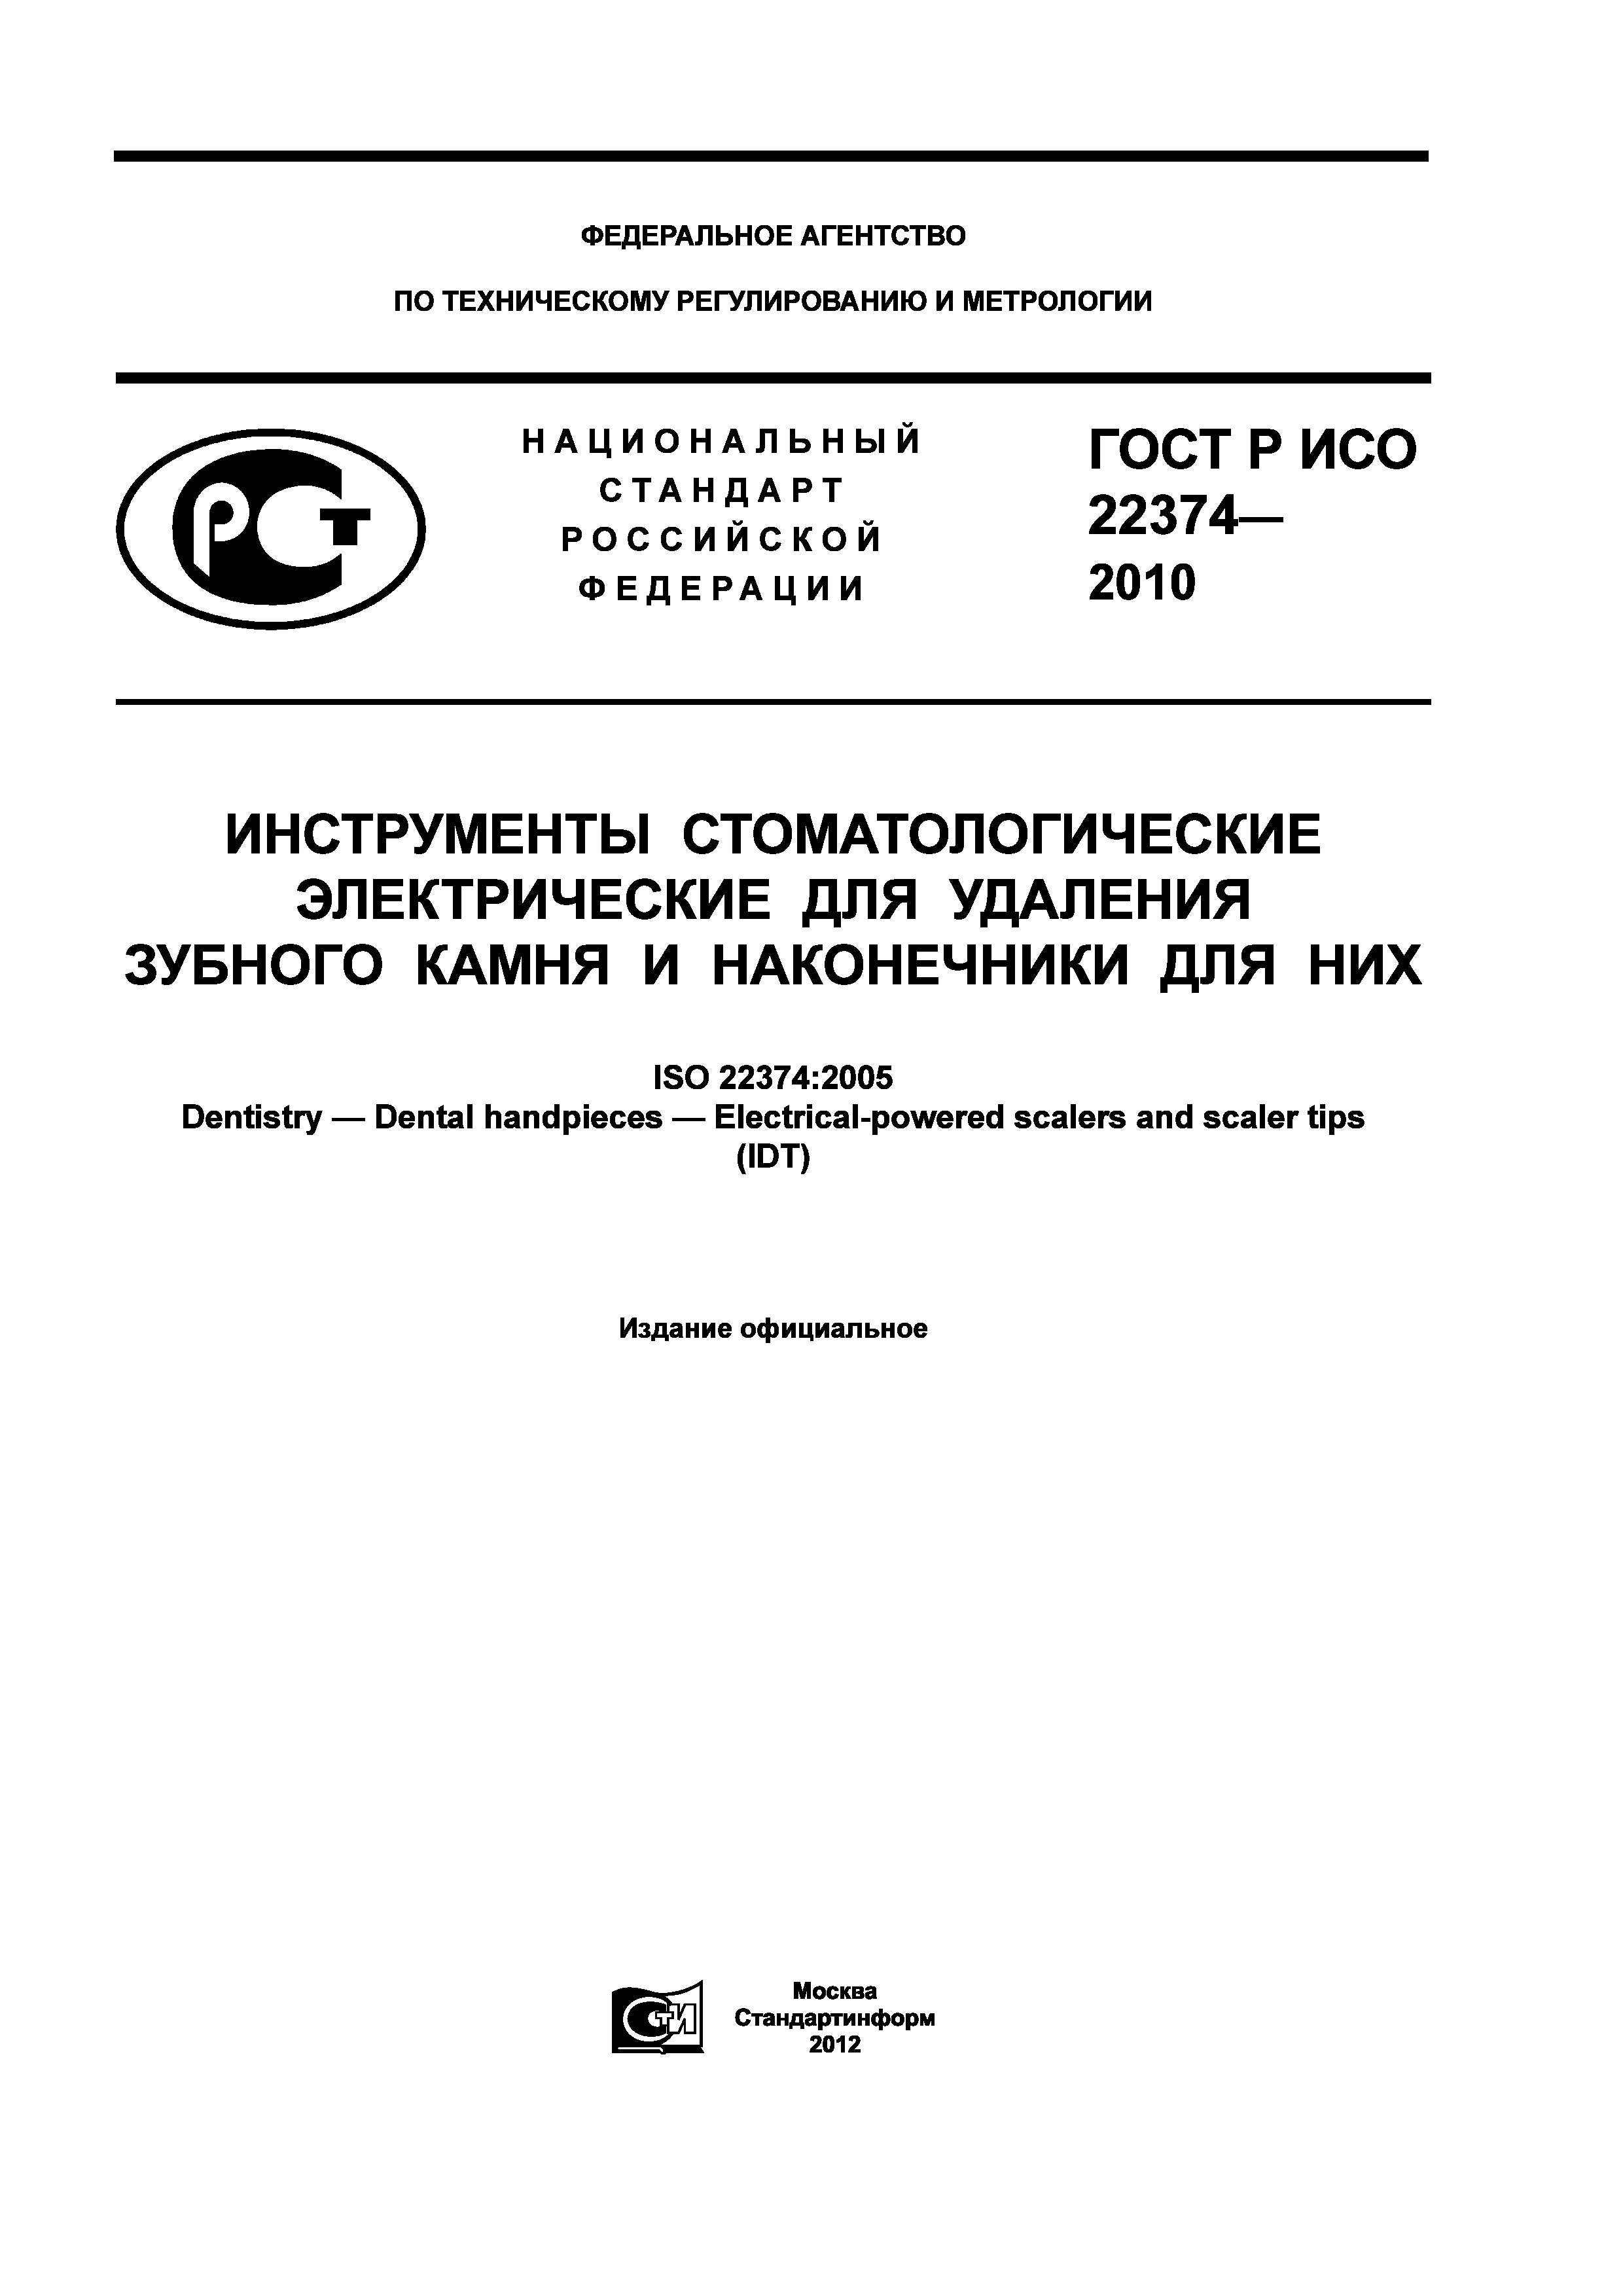 ГОСТ Р ИСО 22374-2010